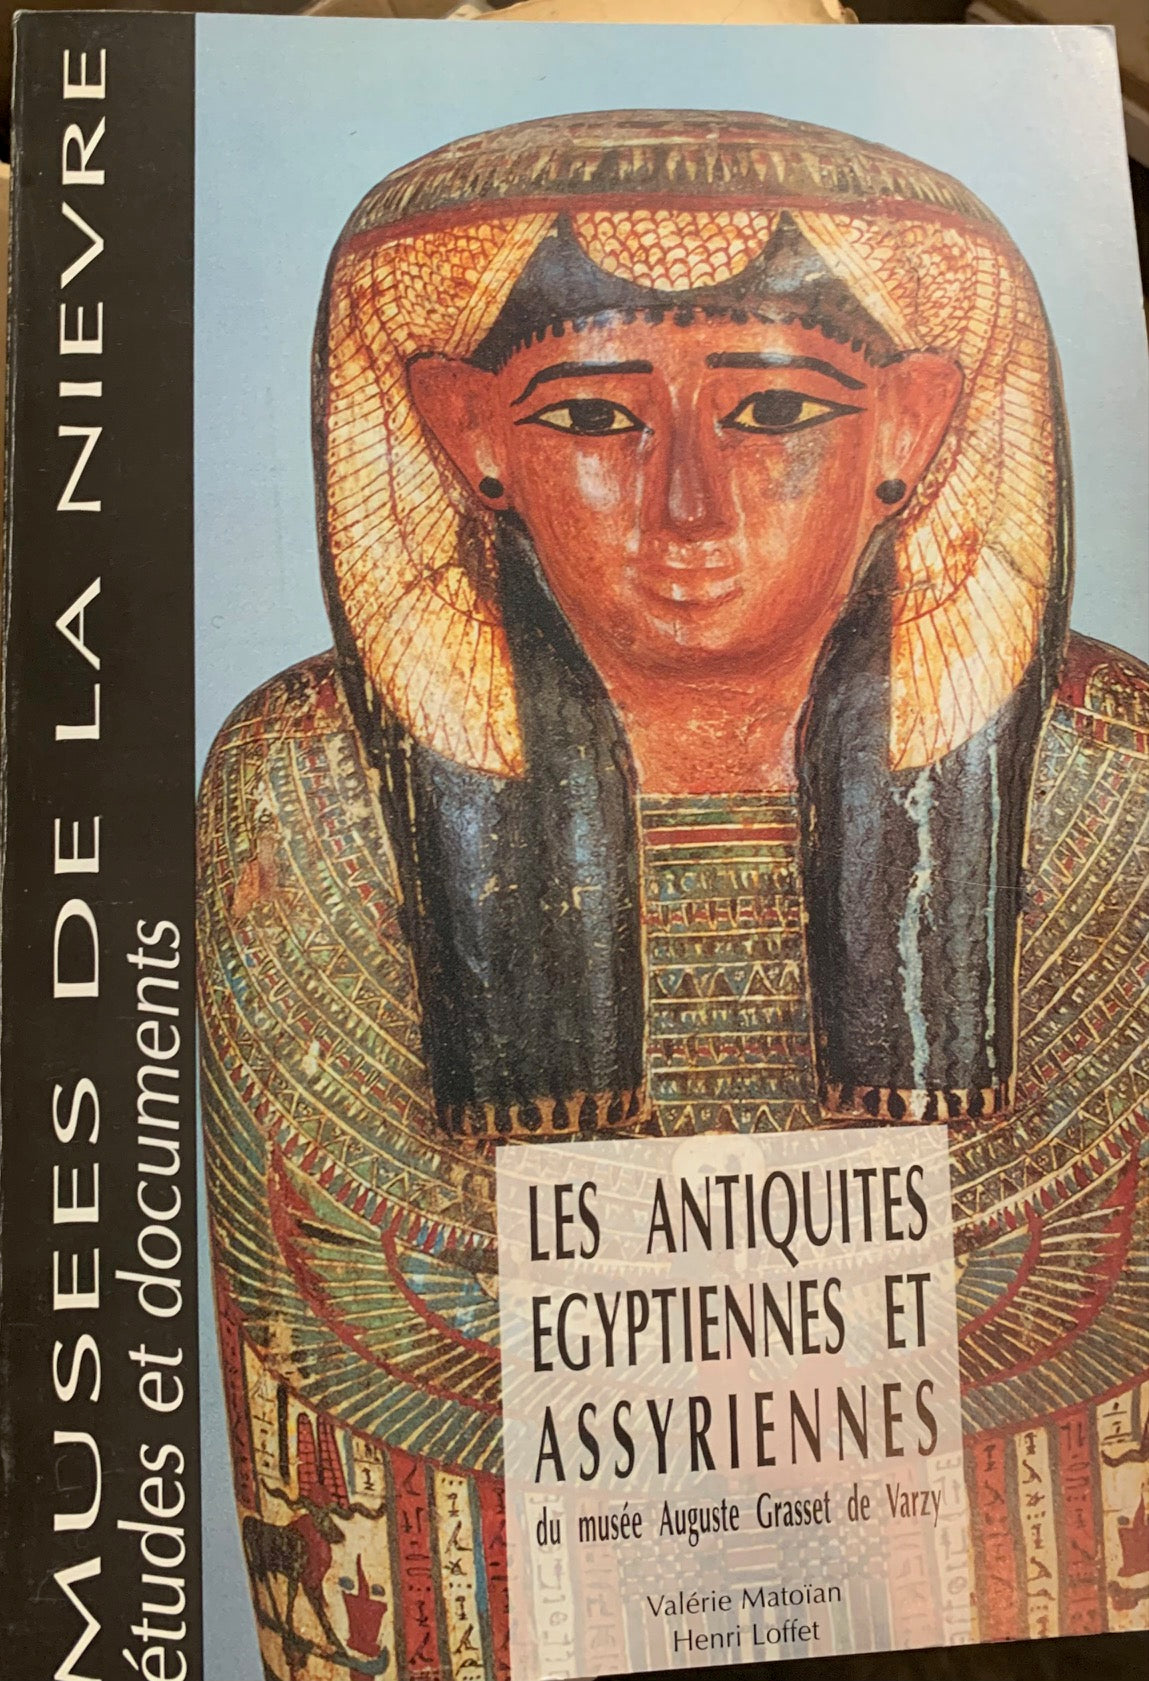 Les antiquités égyptiennes et assyriennes du Musée Auguste Grasset de Varzy.